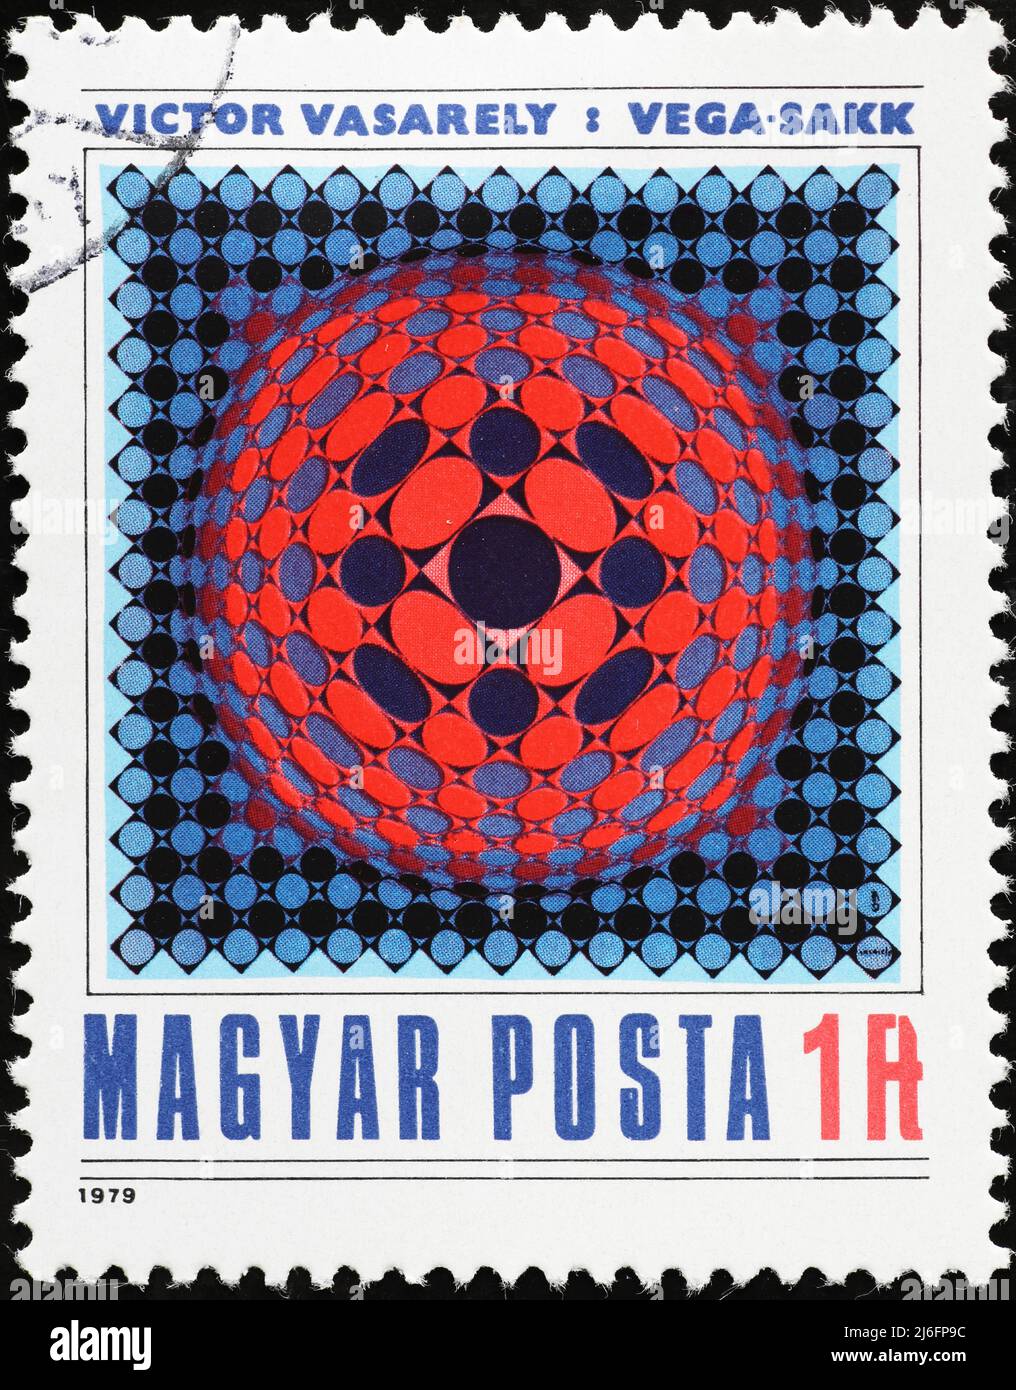 Peinture de Victor Vasarely sur timbre hongrois Banque D'Images